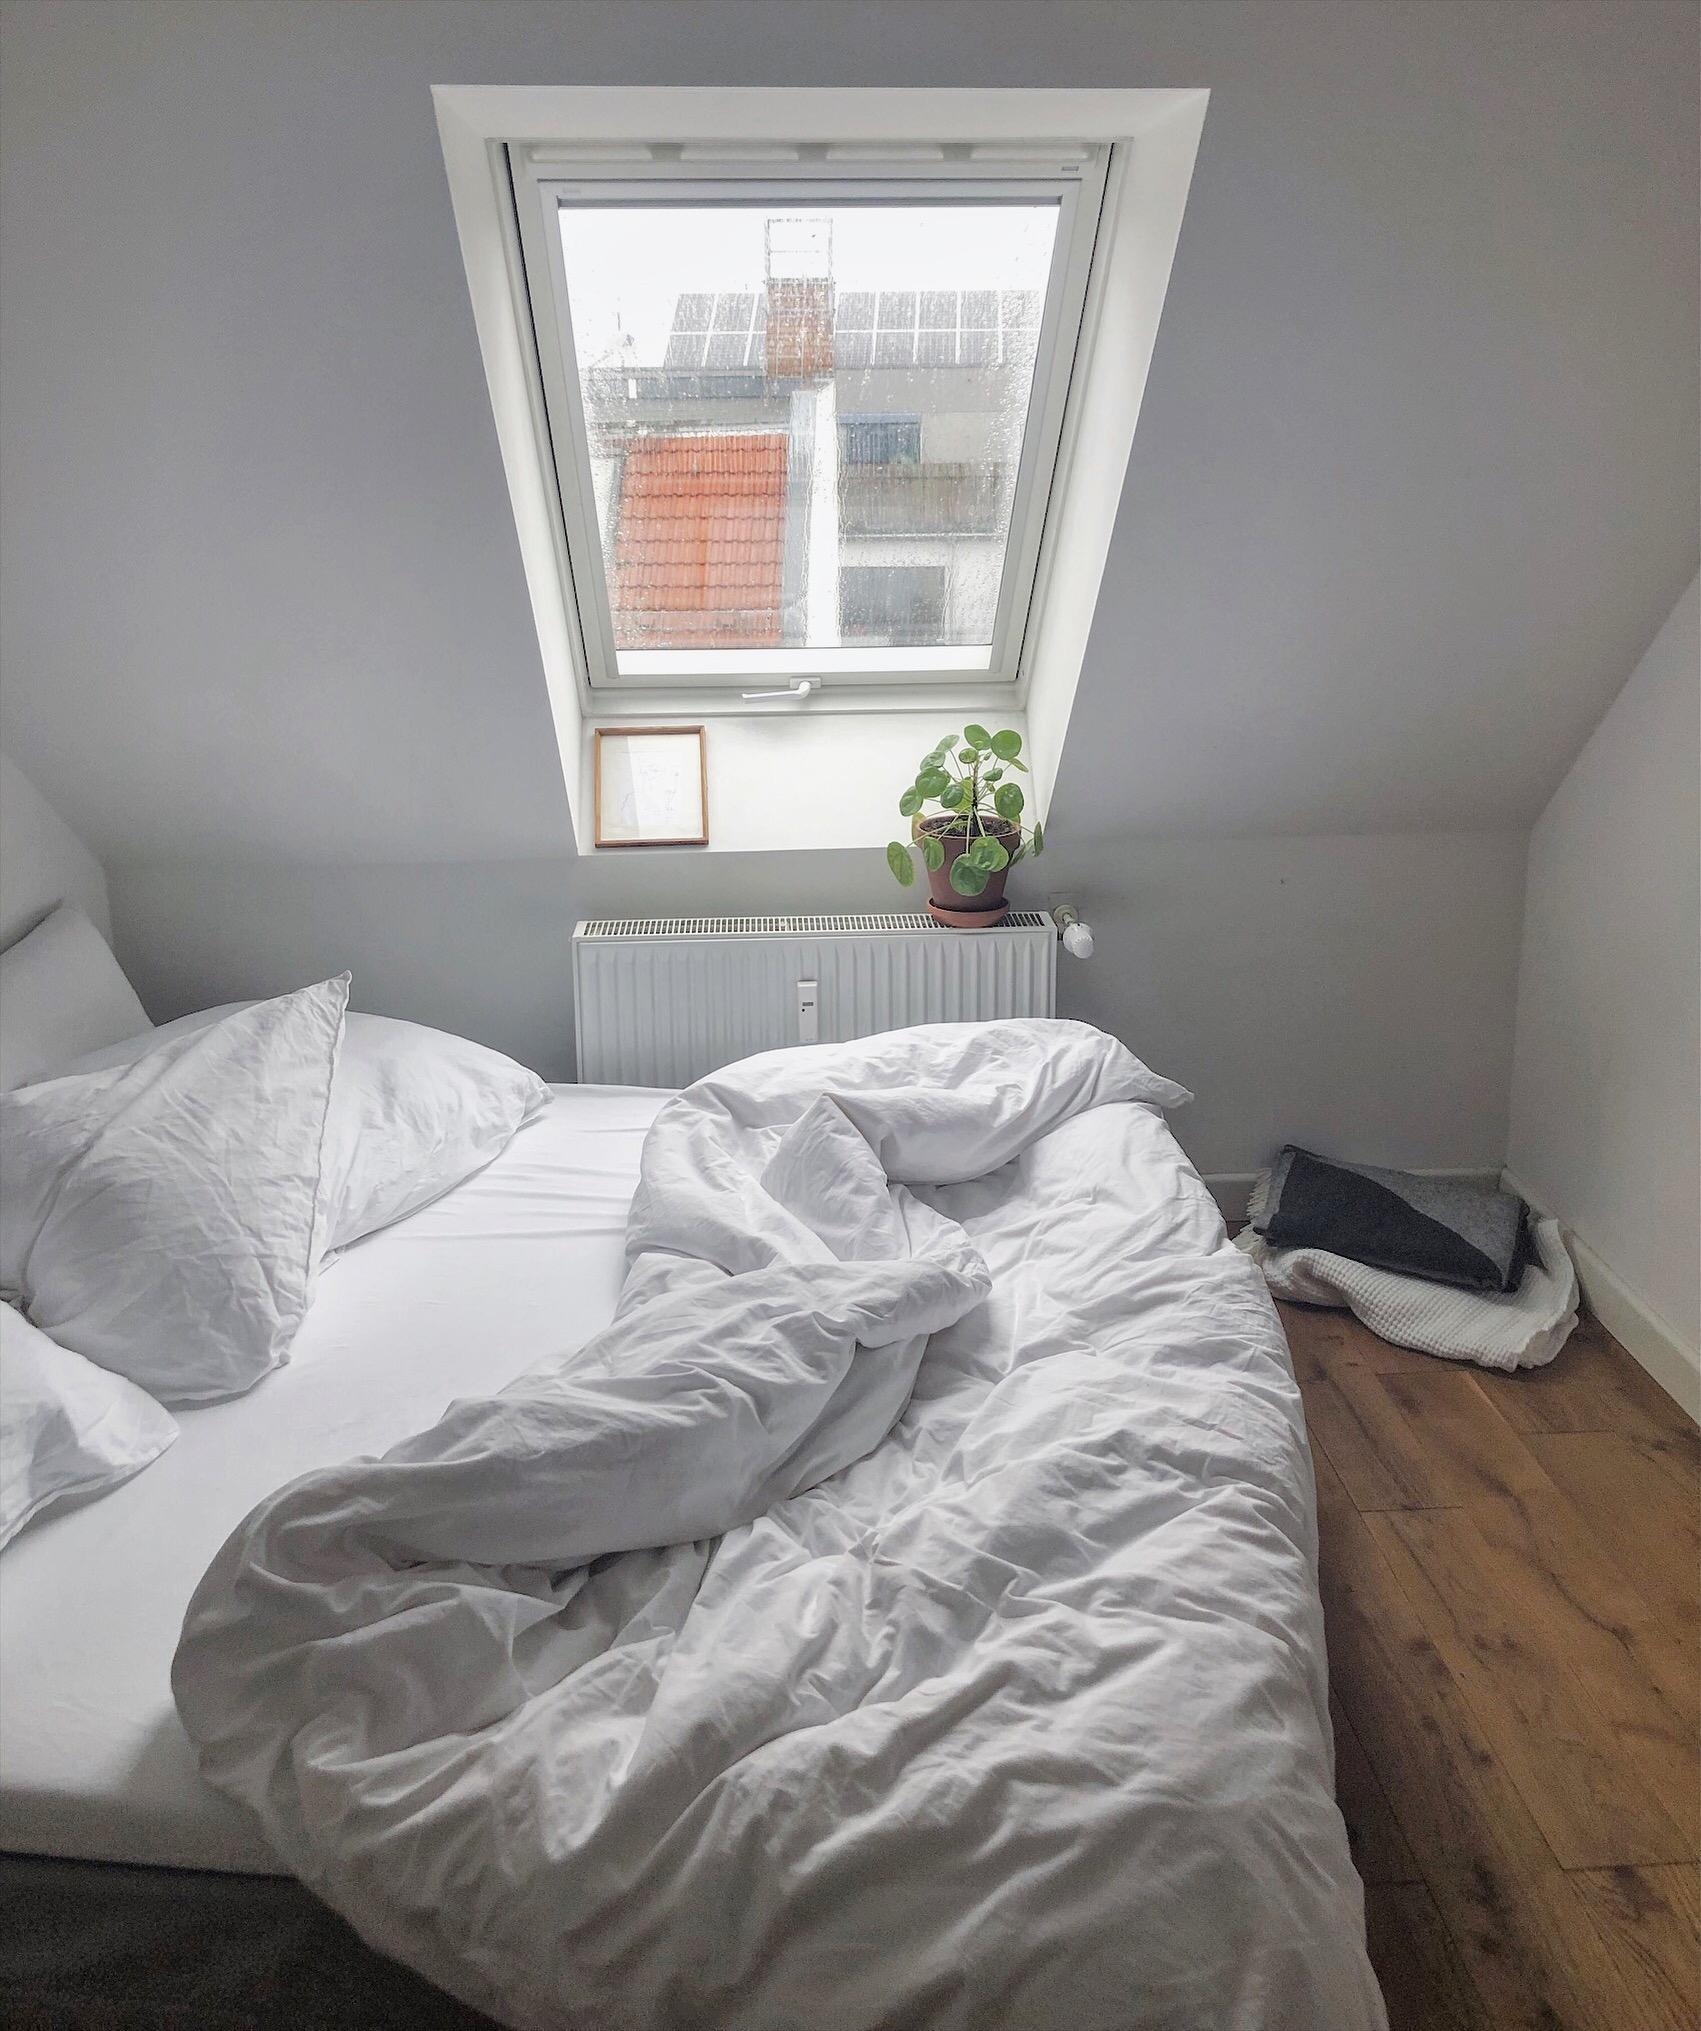 #bedroom #minimalism #pure